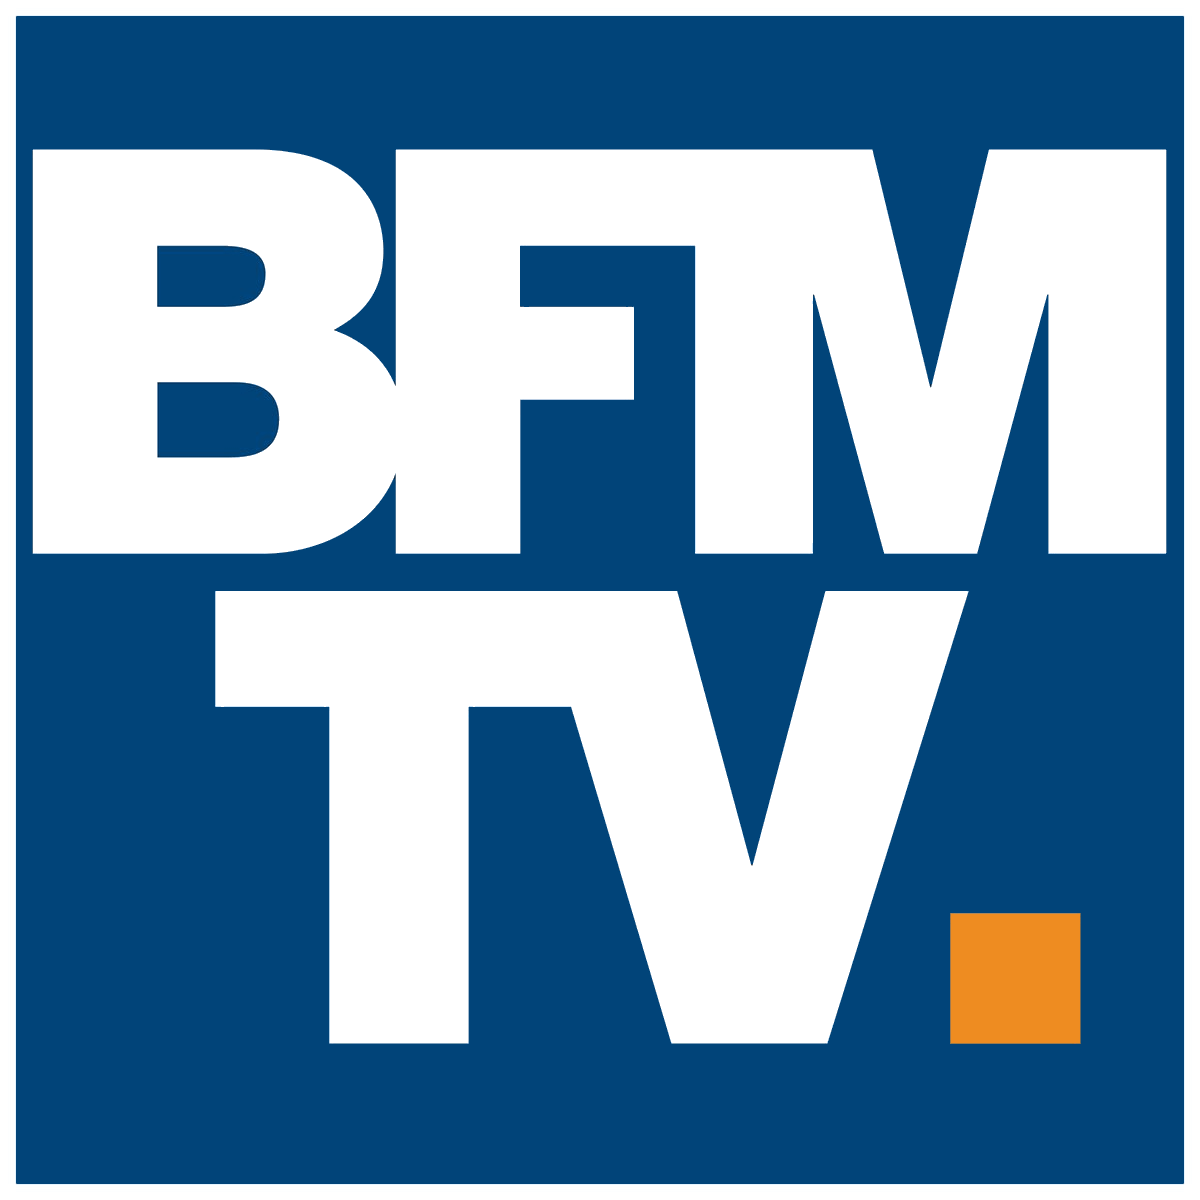 Press logo FR_BFM TV